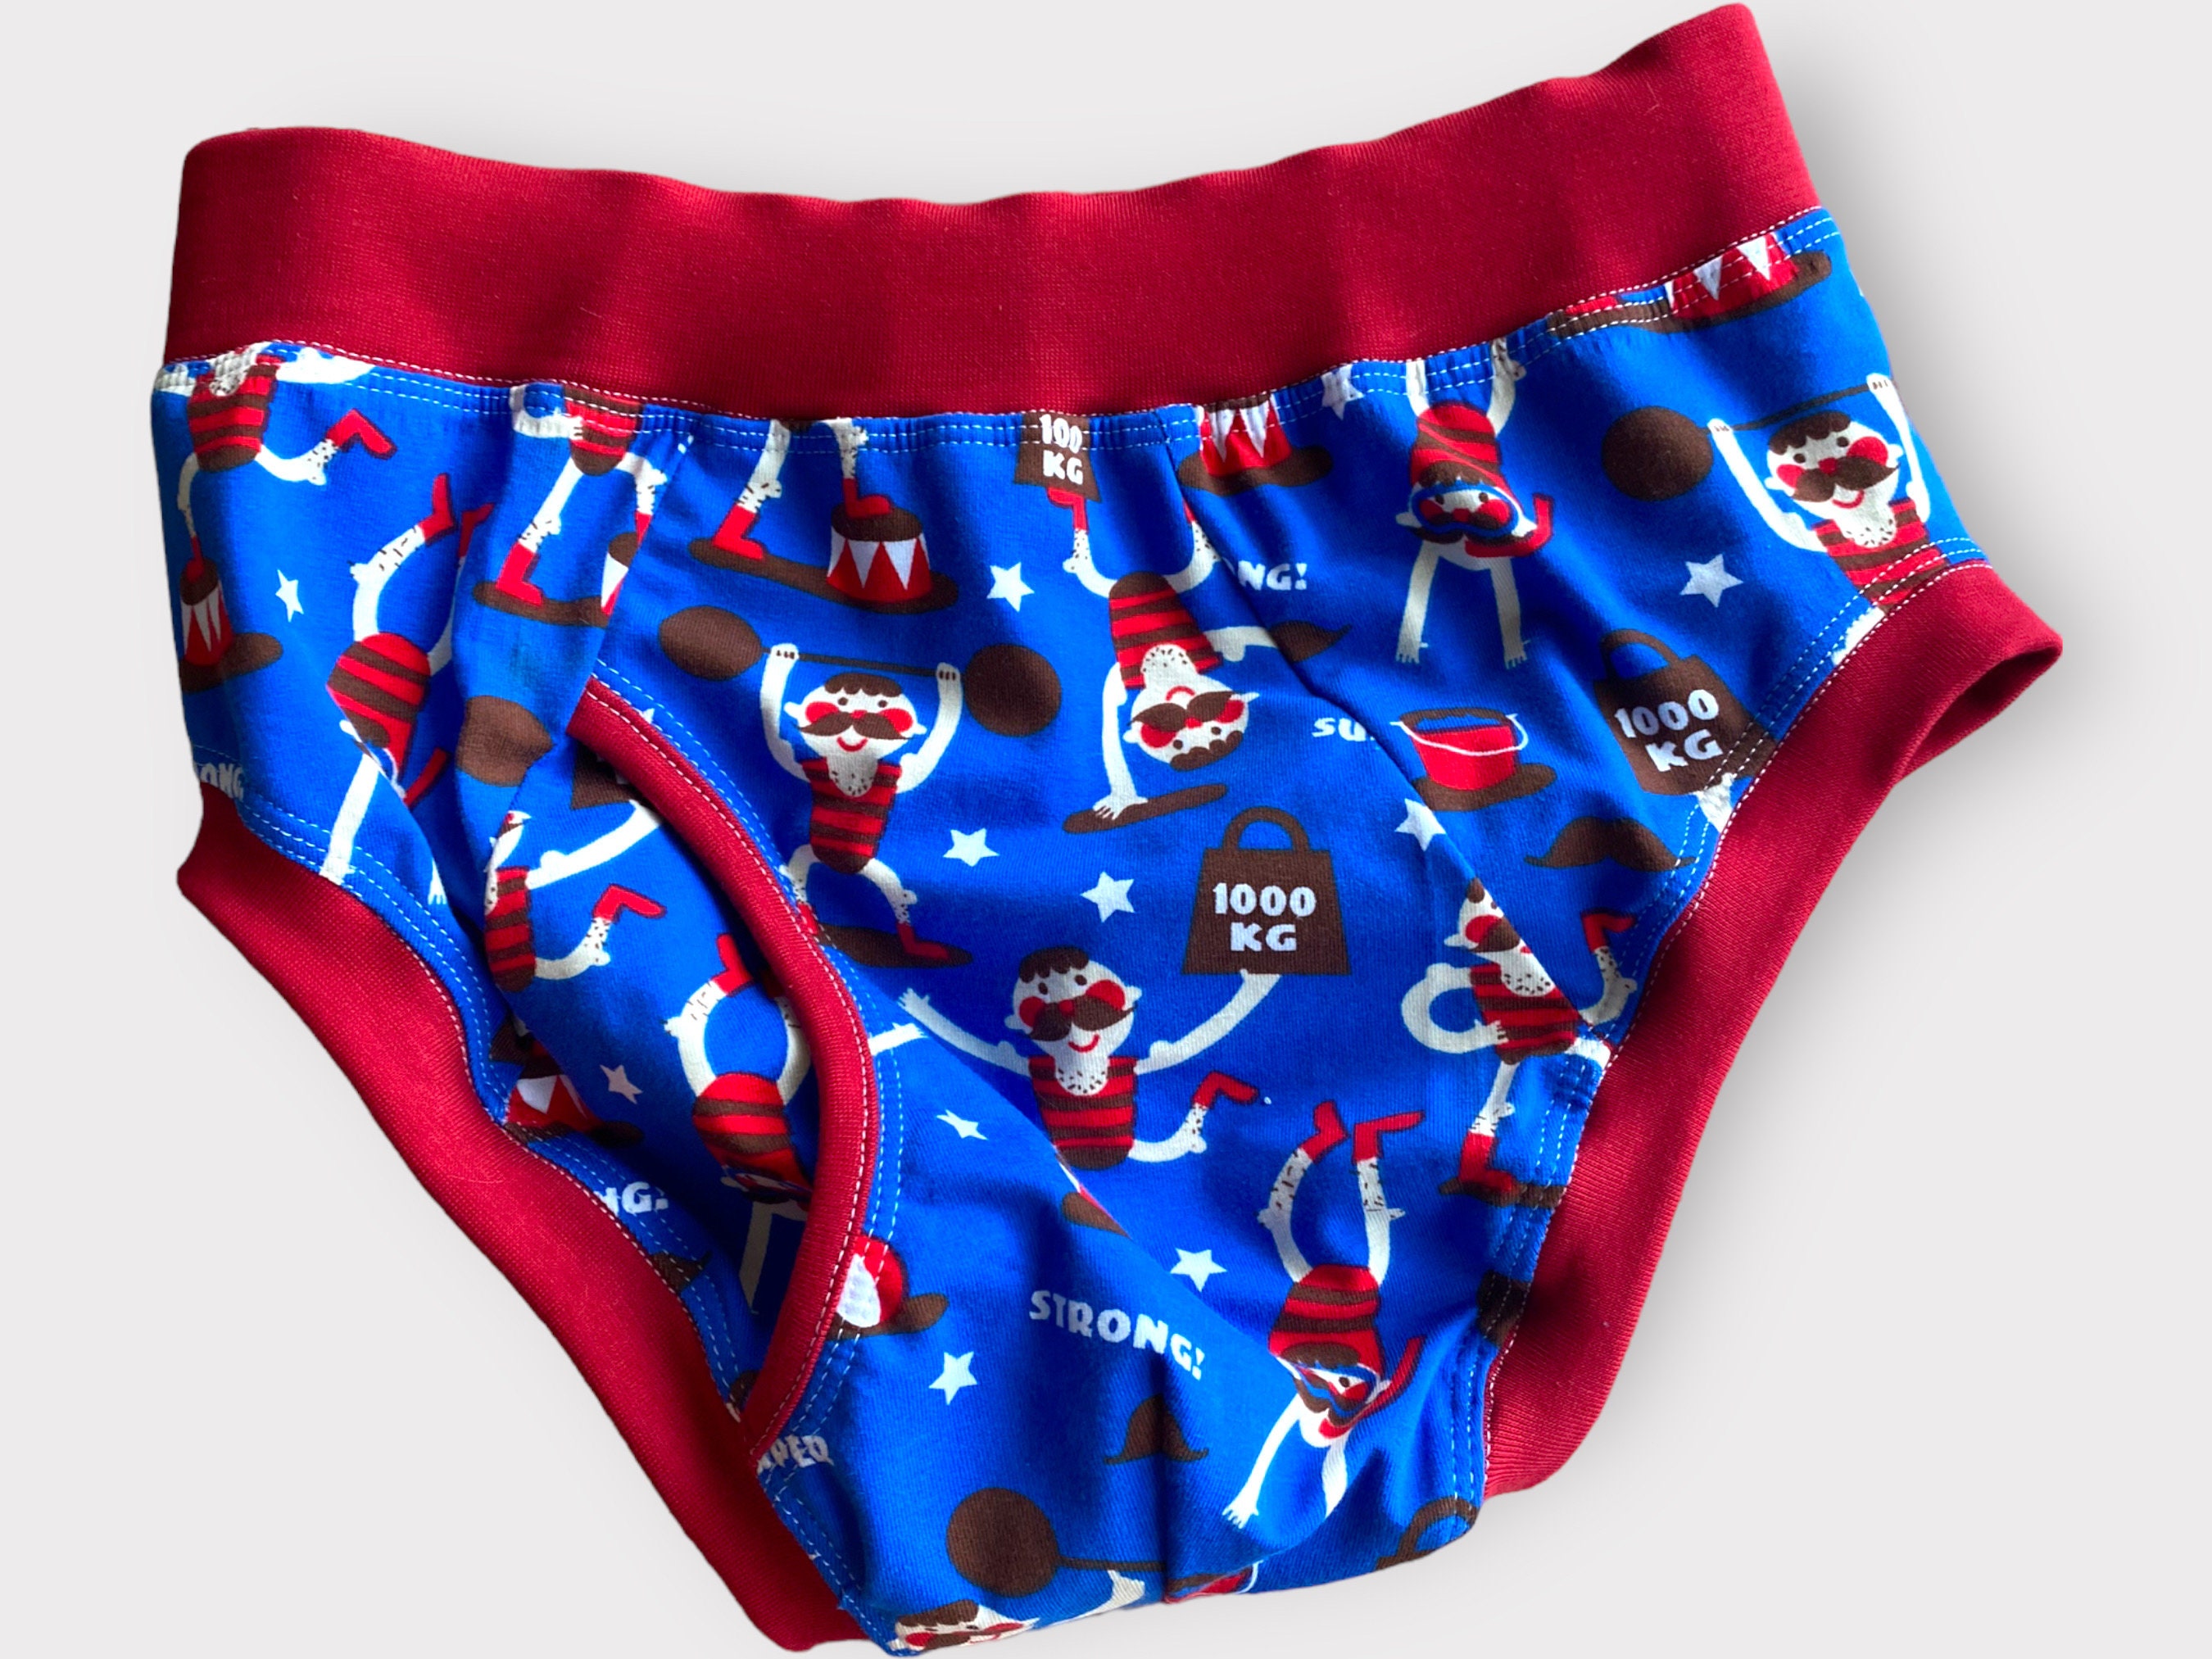 Men's Pizza Boxer Briefs Modal Underwear Fun Gitch Groom Gifts